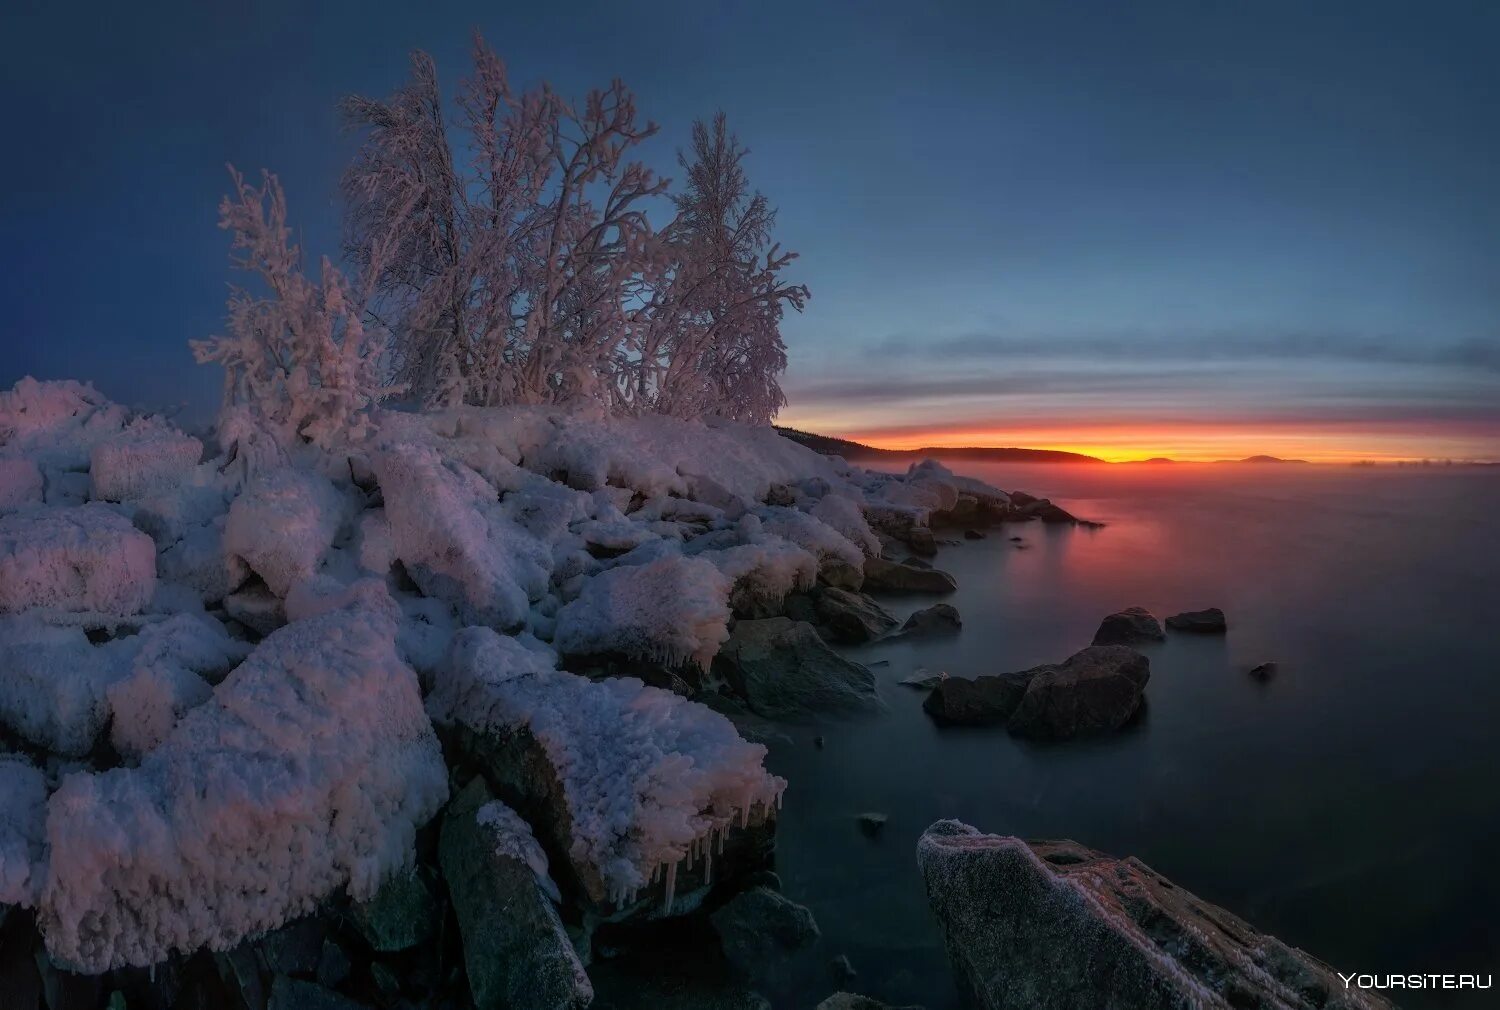 Кольский полуостров озеро Имандра. Кольский полуостров Мурманск зима. Северная природа Кольский полуостров. Хибины Имандра зимой.